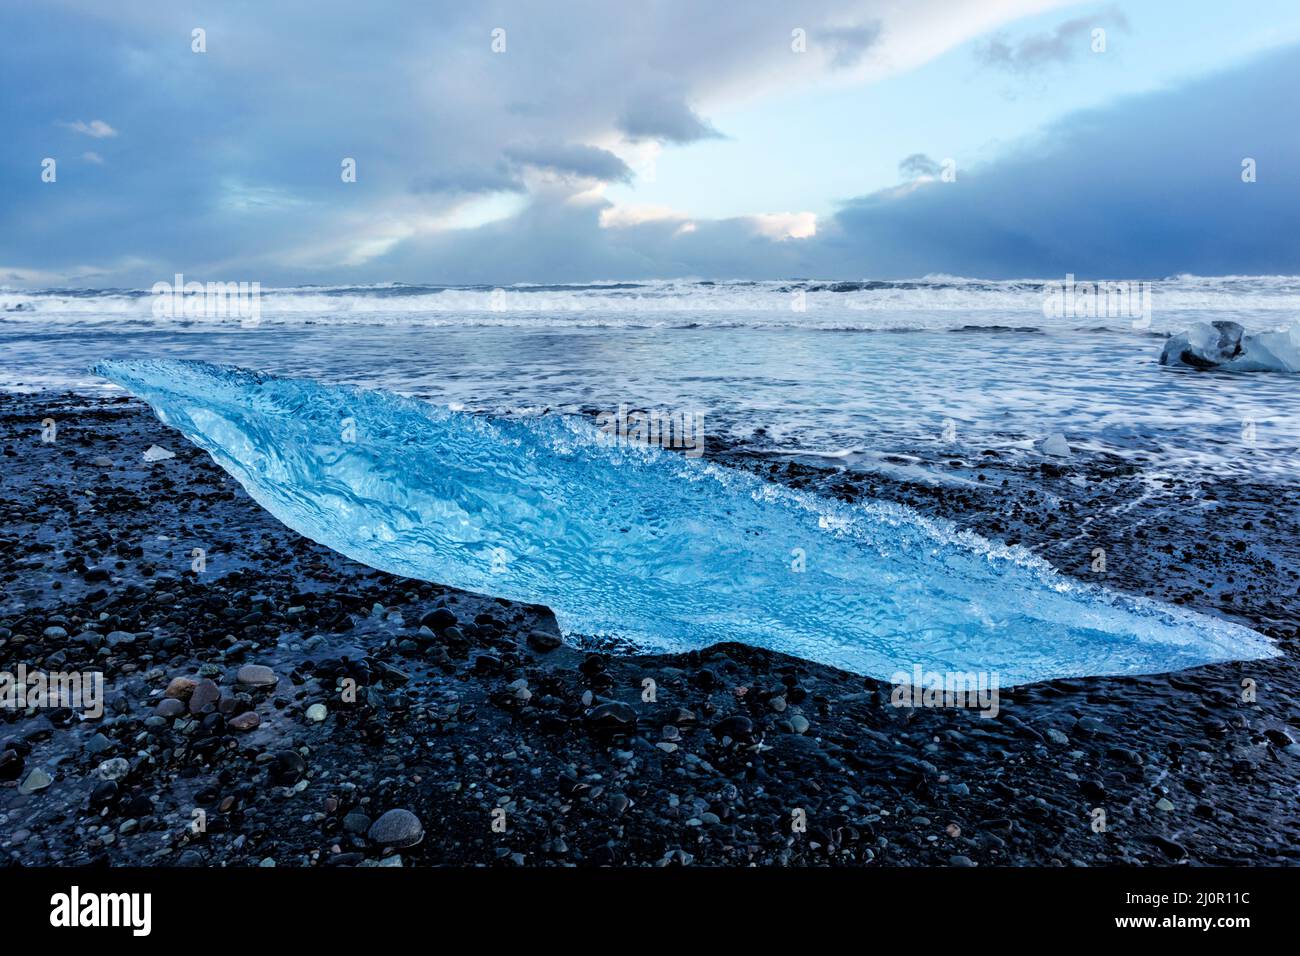 Reste de l'iceberg s'est lavé sur la plage de Jökulsarlön où des icebergs s'écoulent de la lagune de Jökulsarlön en Islande Banque D'Images